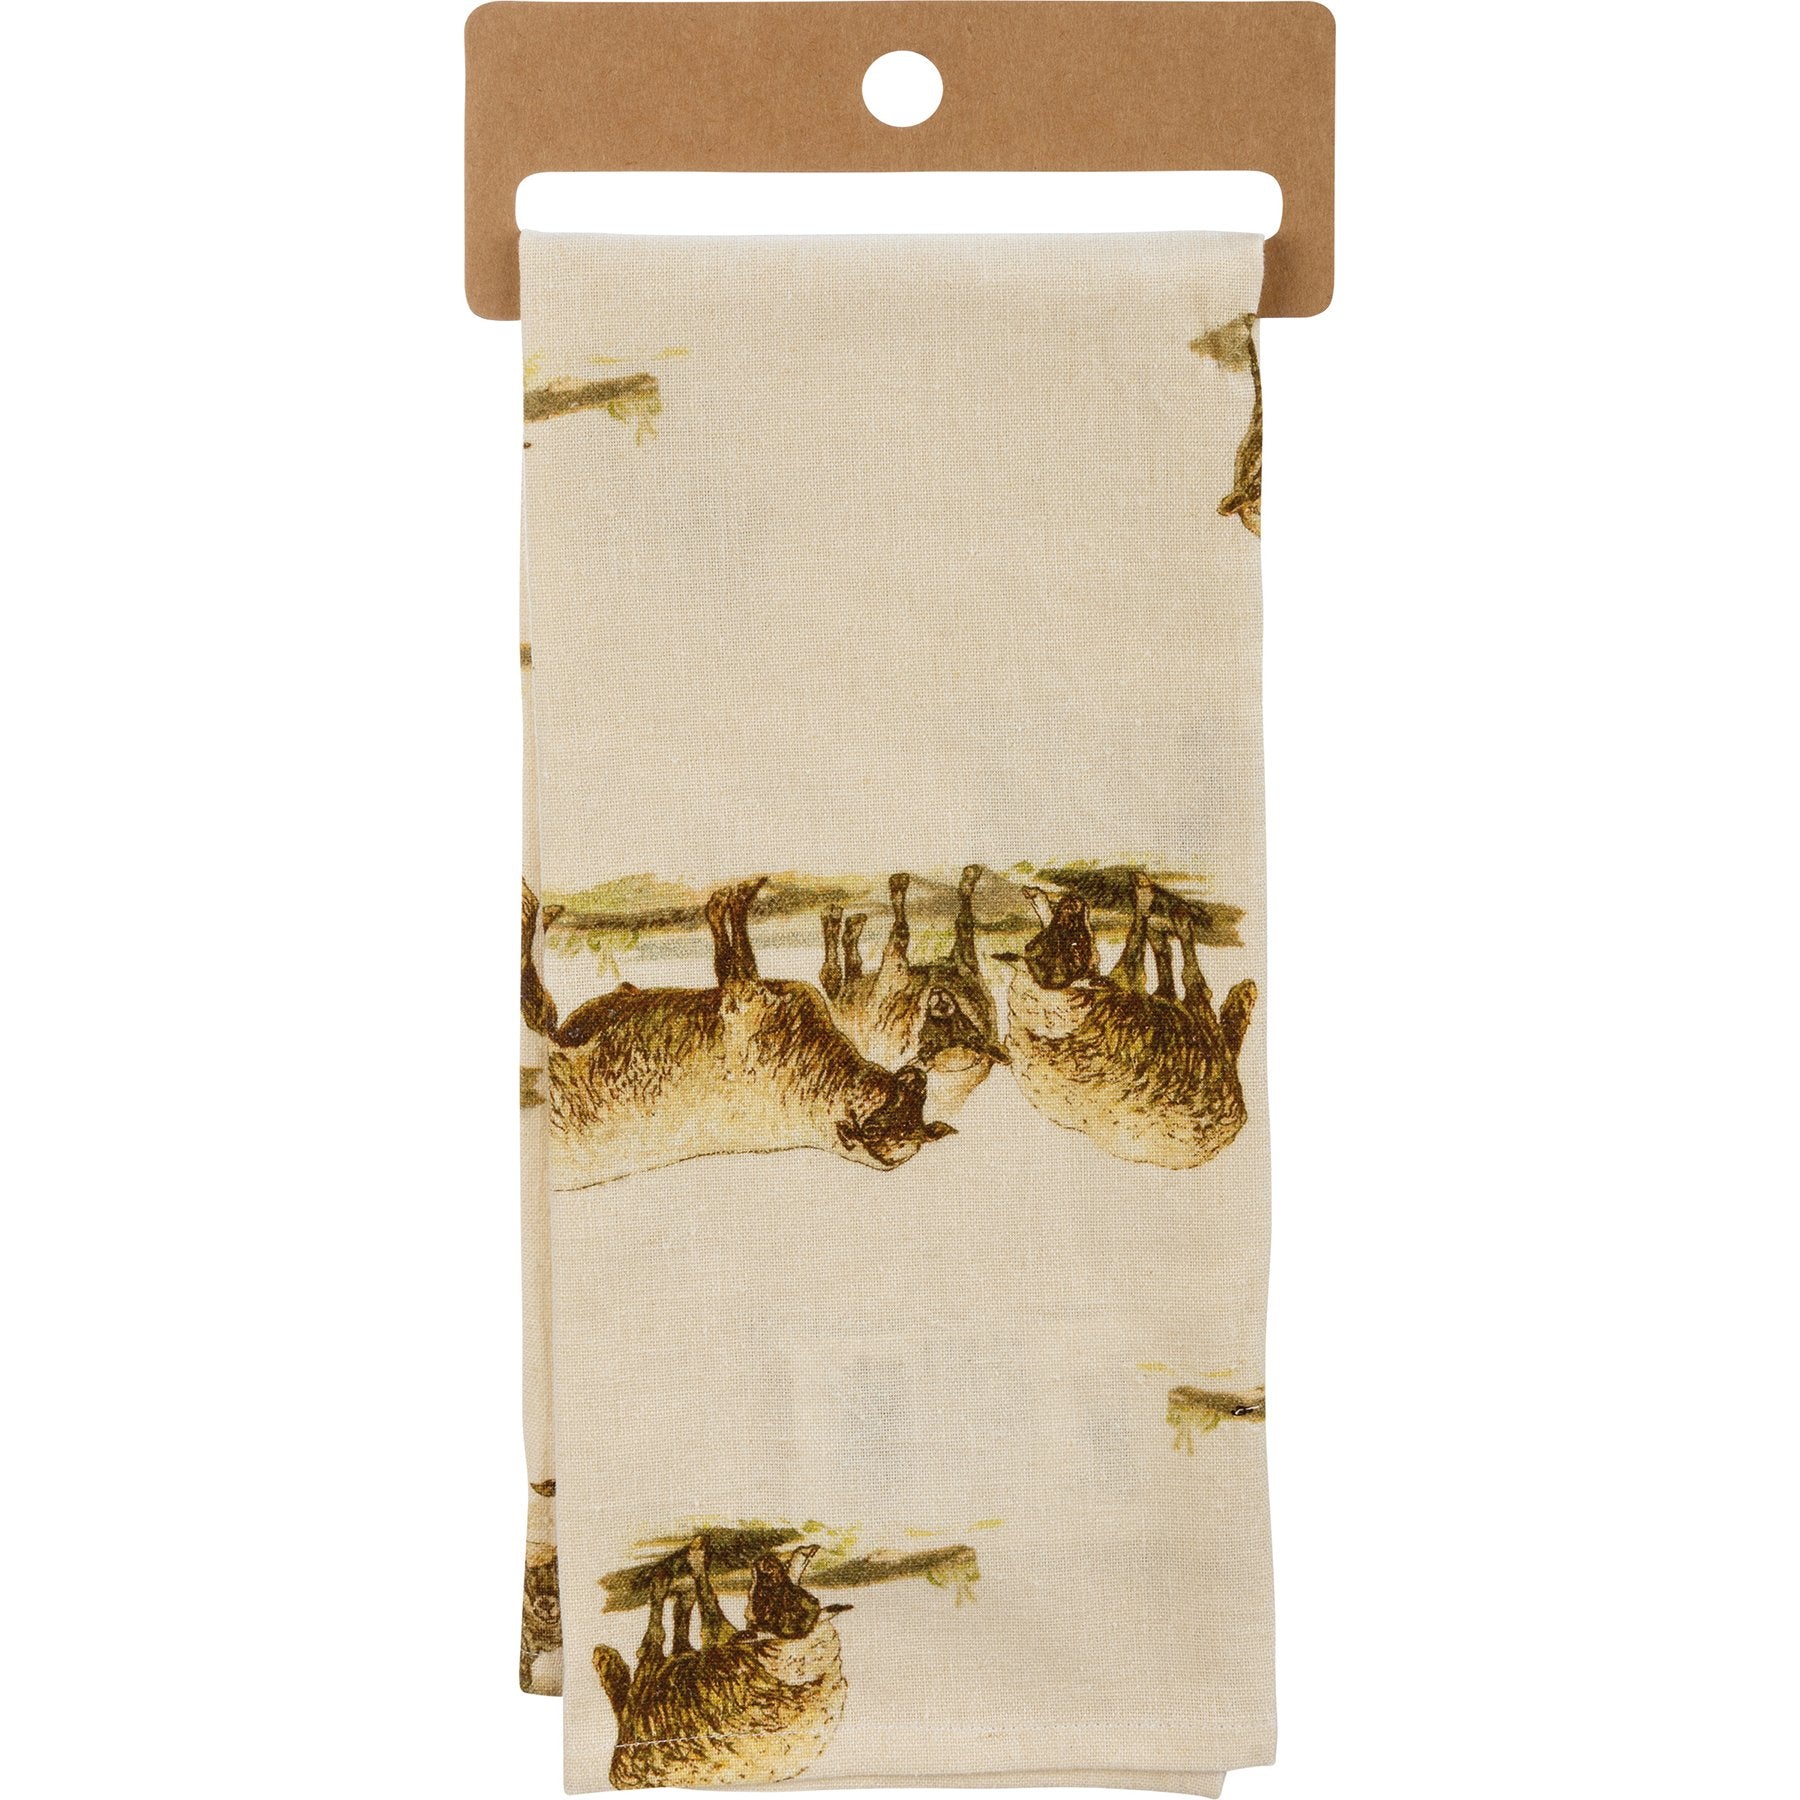 Sheep Happens Dish Cloth Towel | Cotten Linen Novelty Tea Towel | Embroidered Text | 18" x 28"